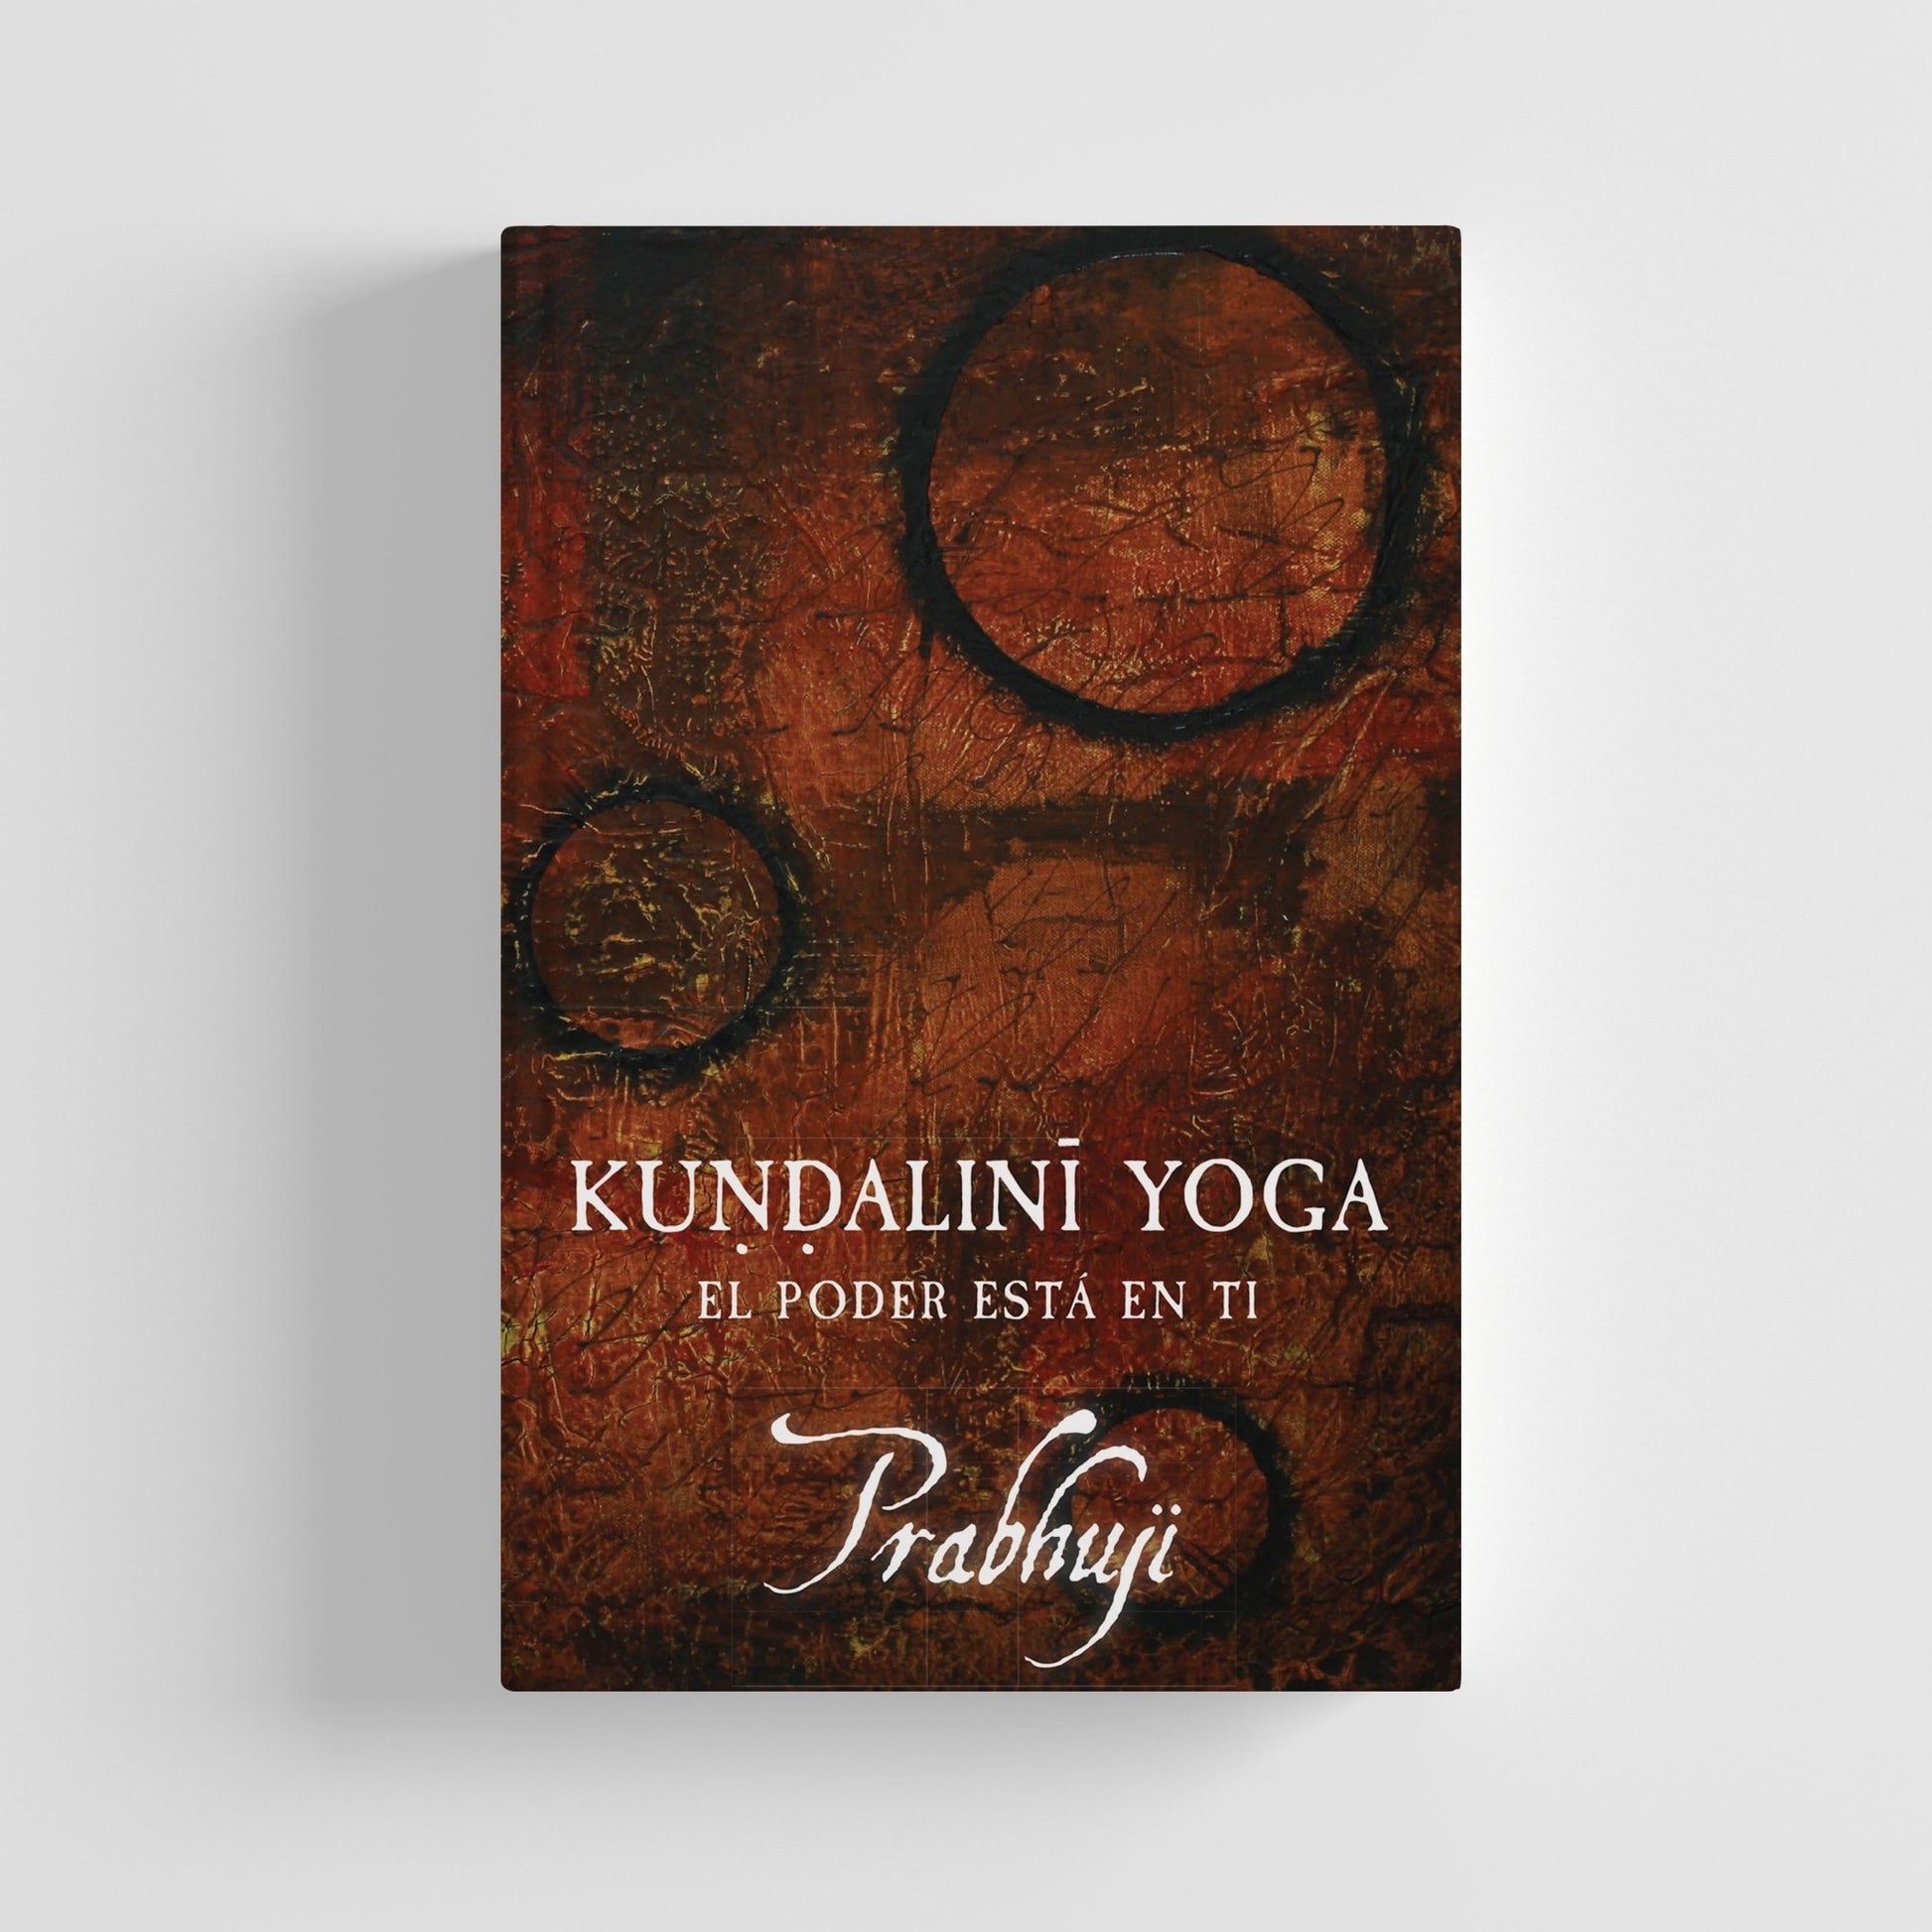 Kundalini yoga - el poder esta en ti con Prabhuji (Hard cover - Spanish) - Tree Spirit Wellness